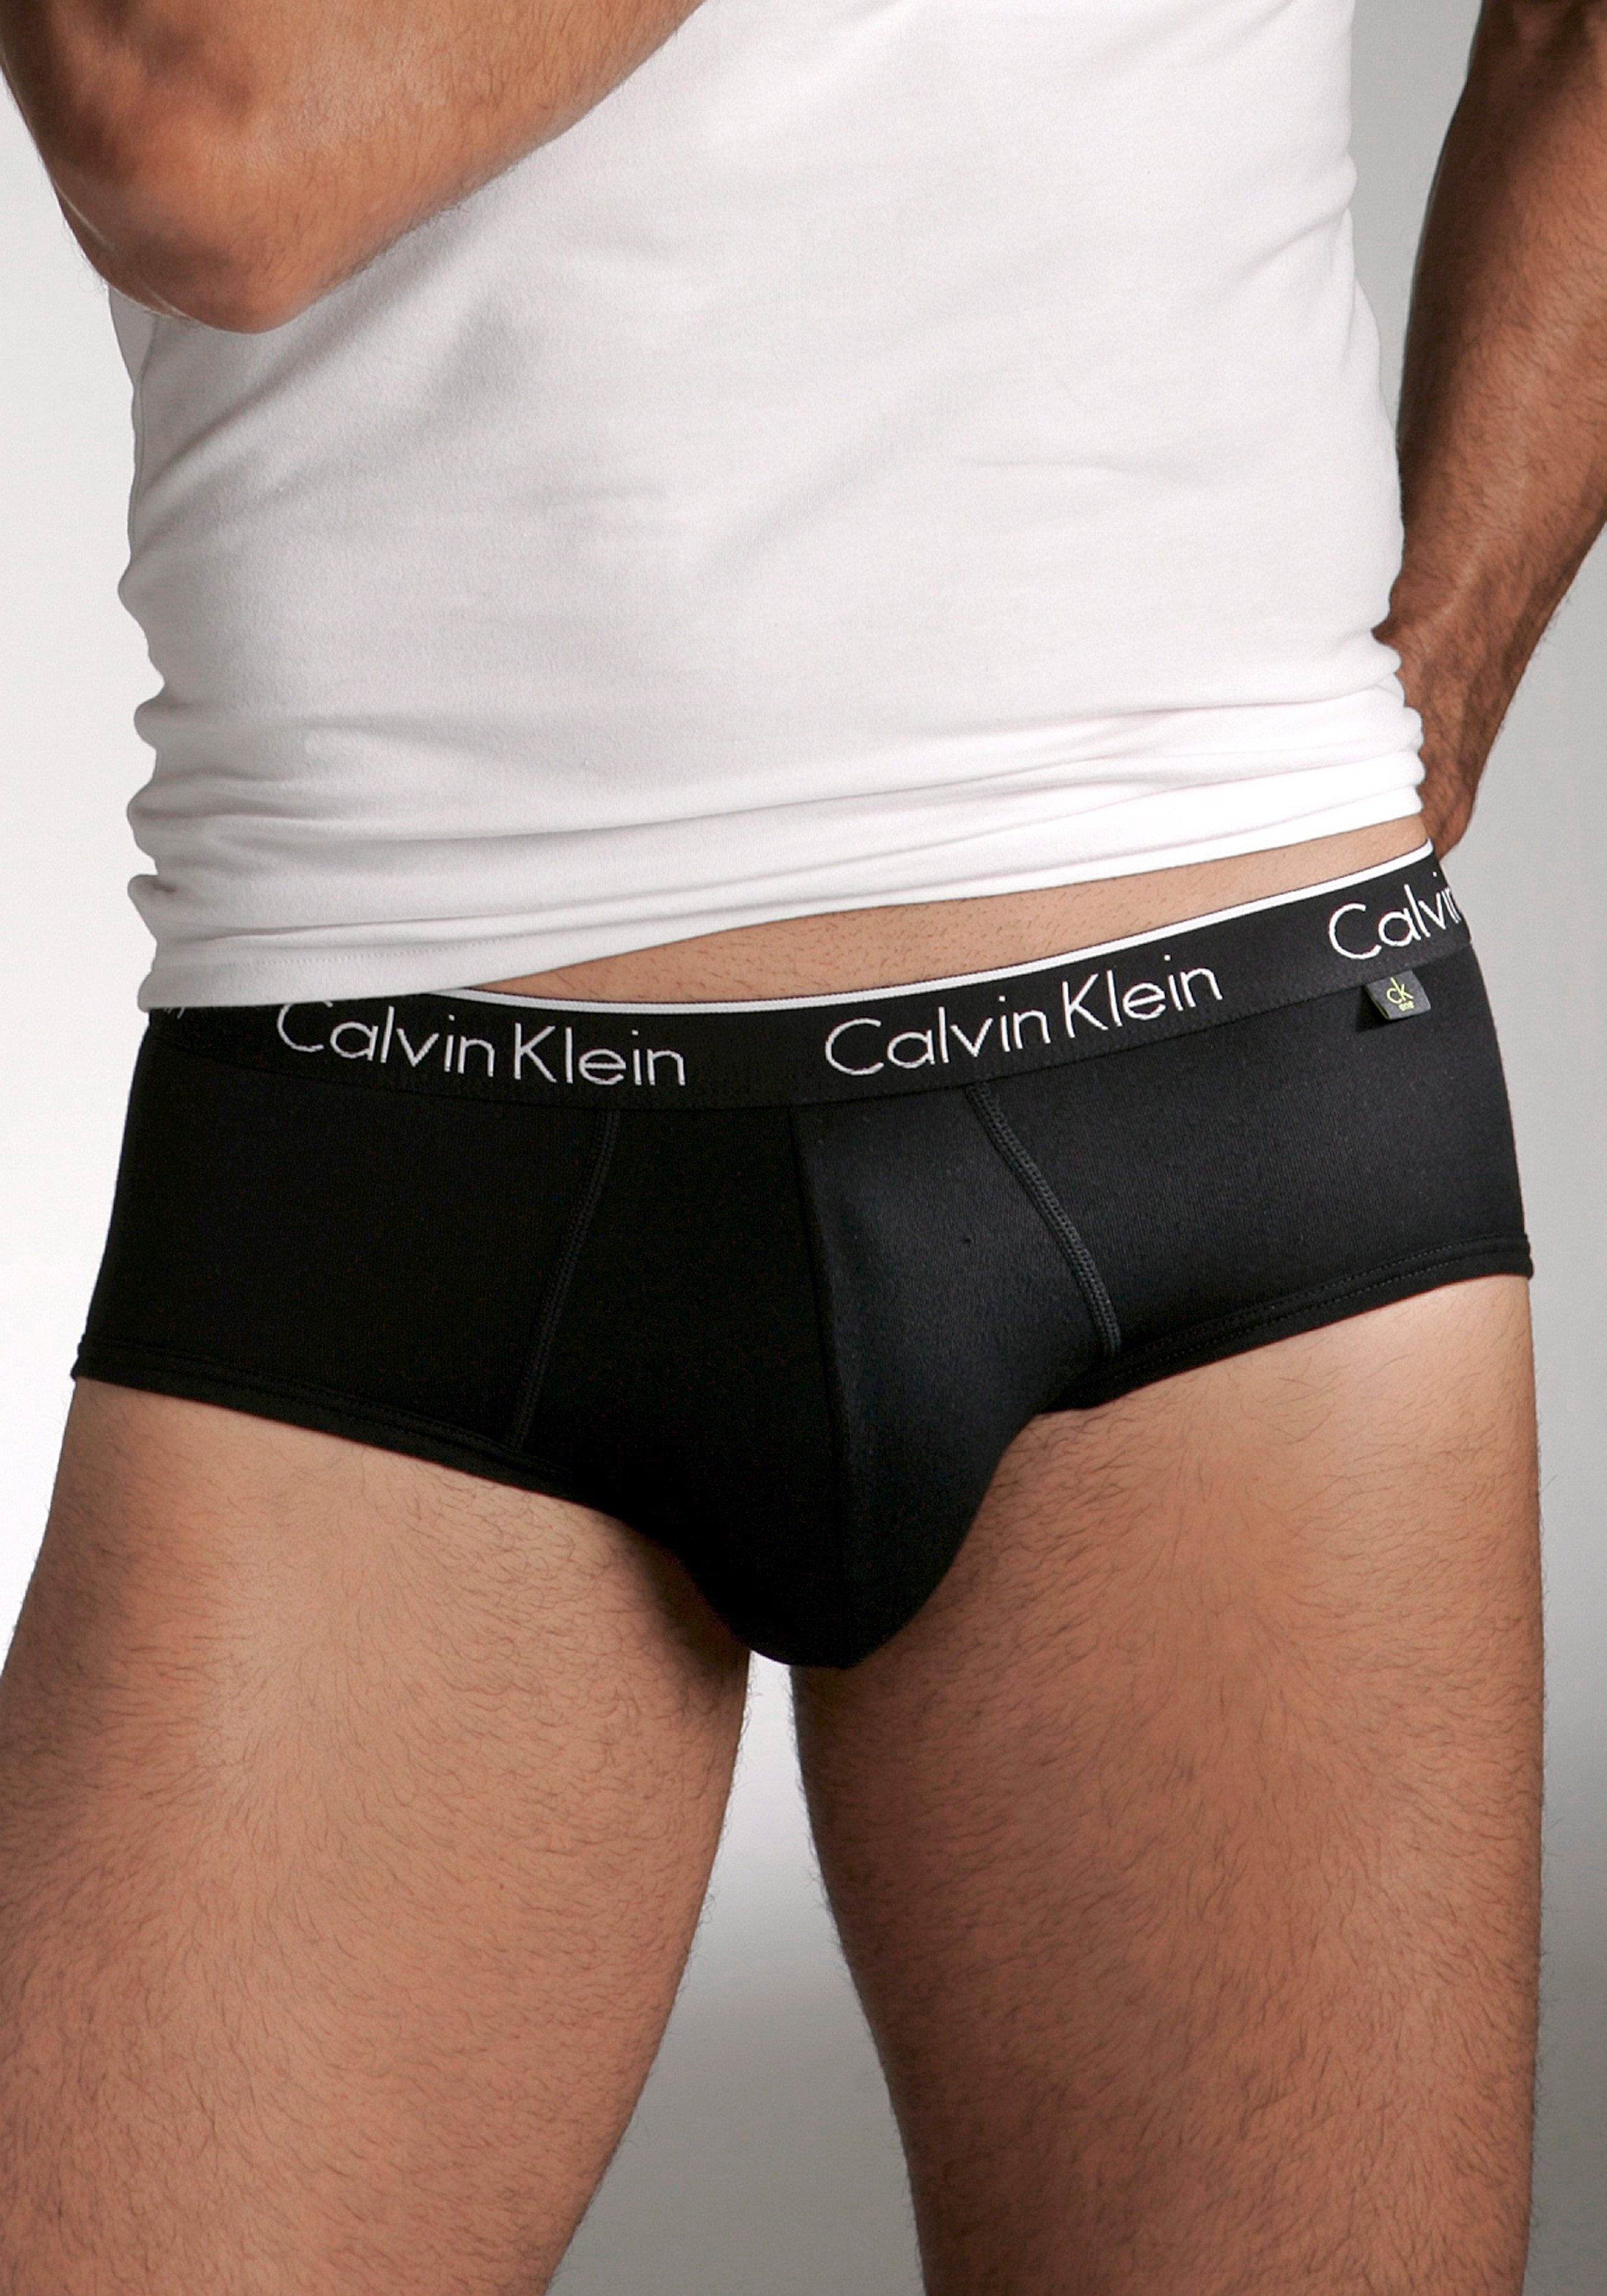 Calvin Klein Slips (2 Stück) mit kontrastfarbenem Logodruck im Webbund